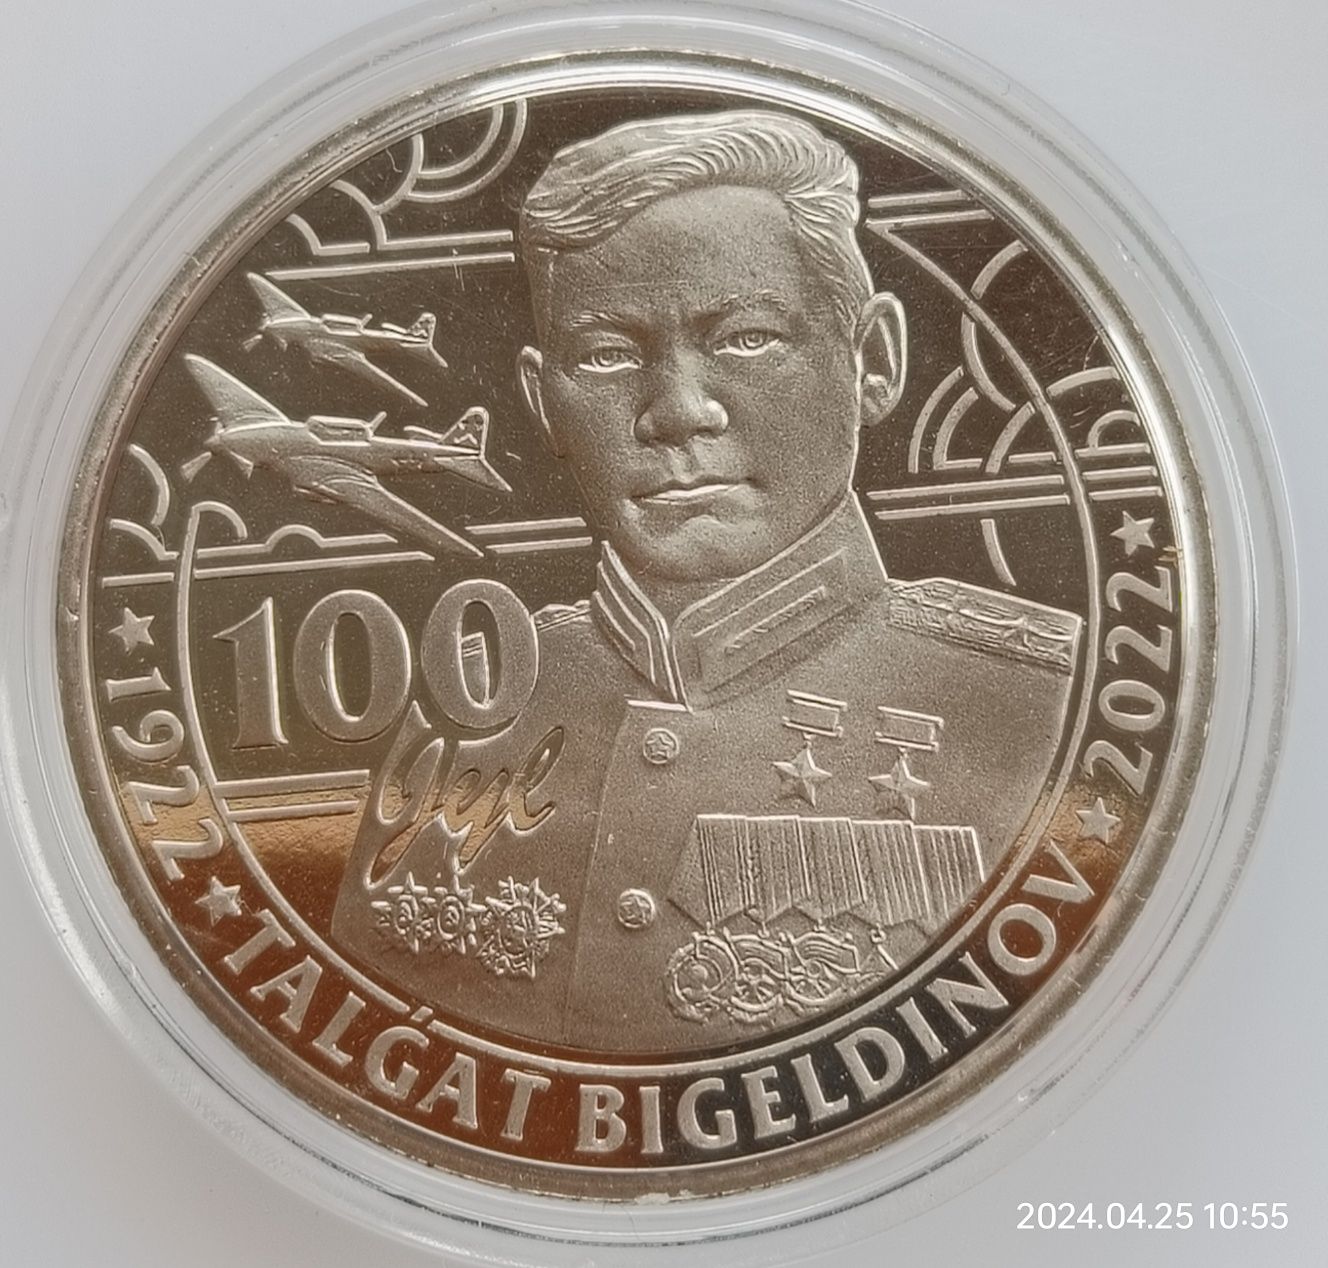 Продам монету в коллекцию, герой СССР , Лётчик Талгат Бегельдинов,